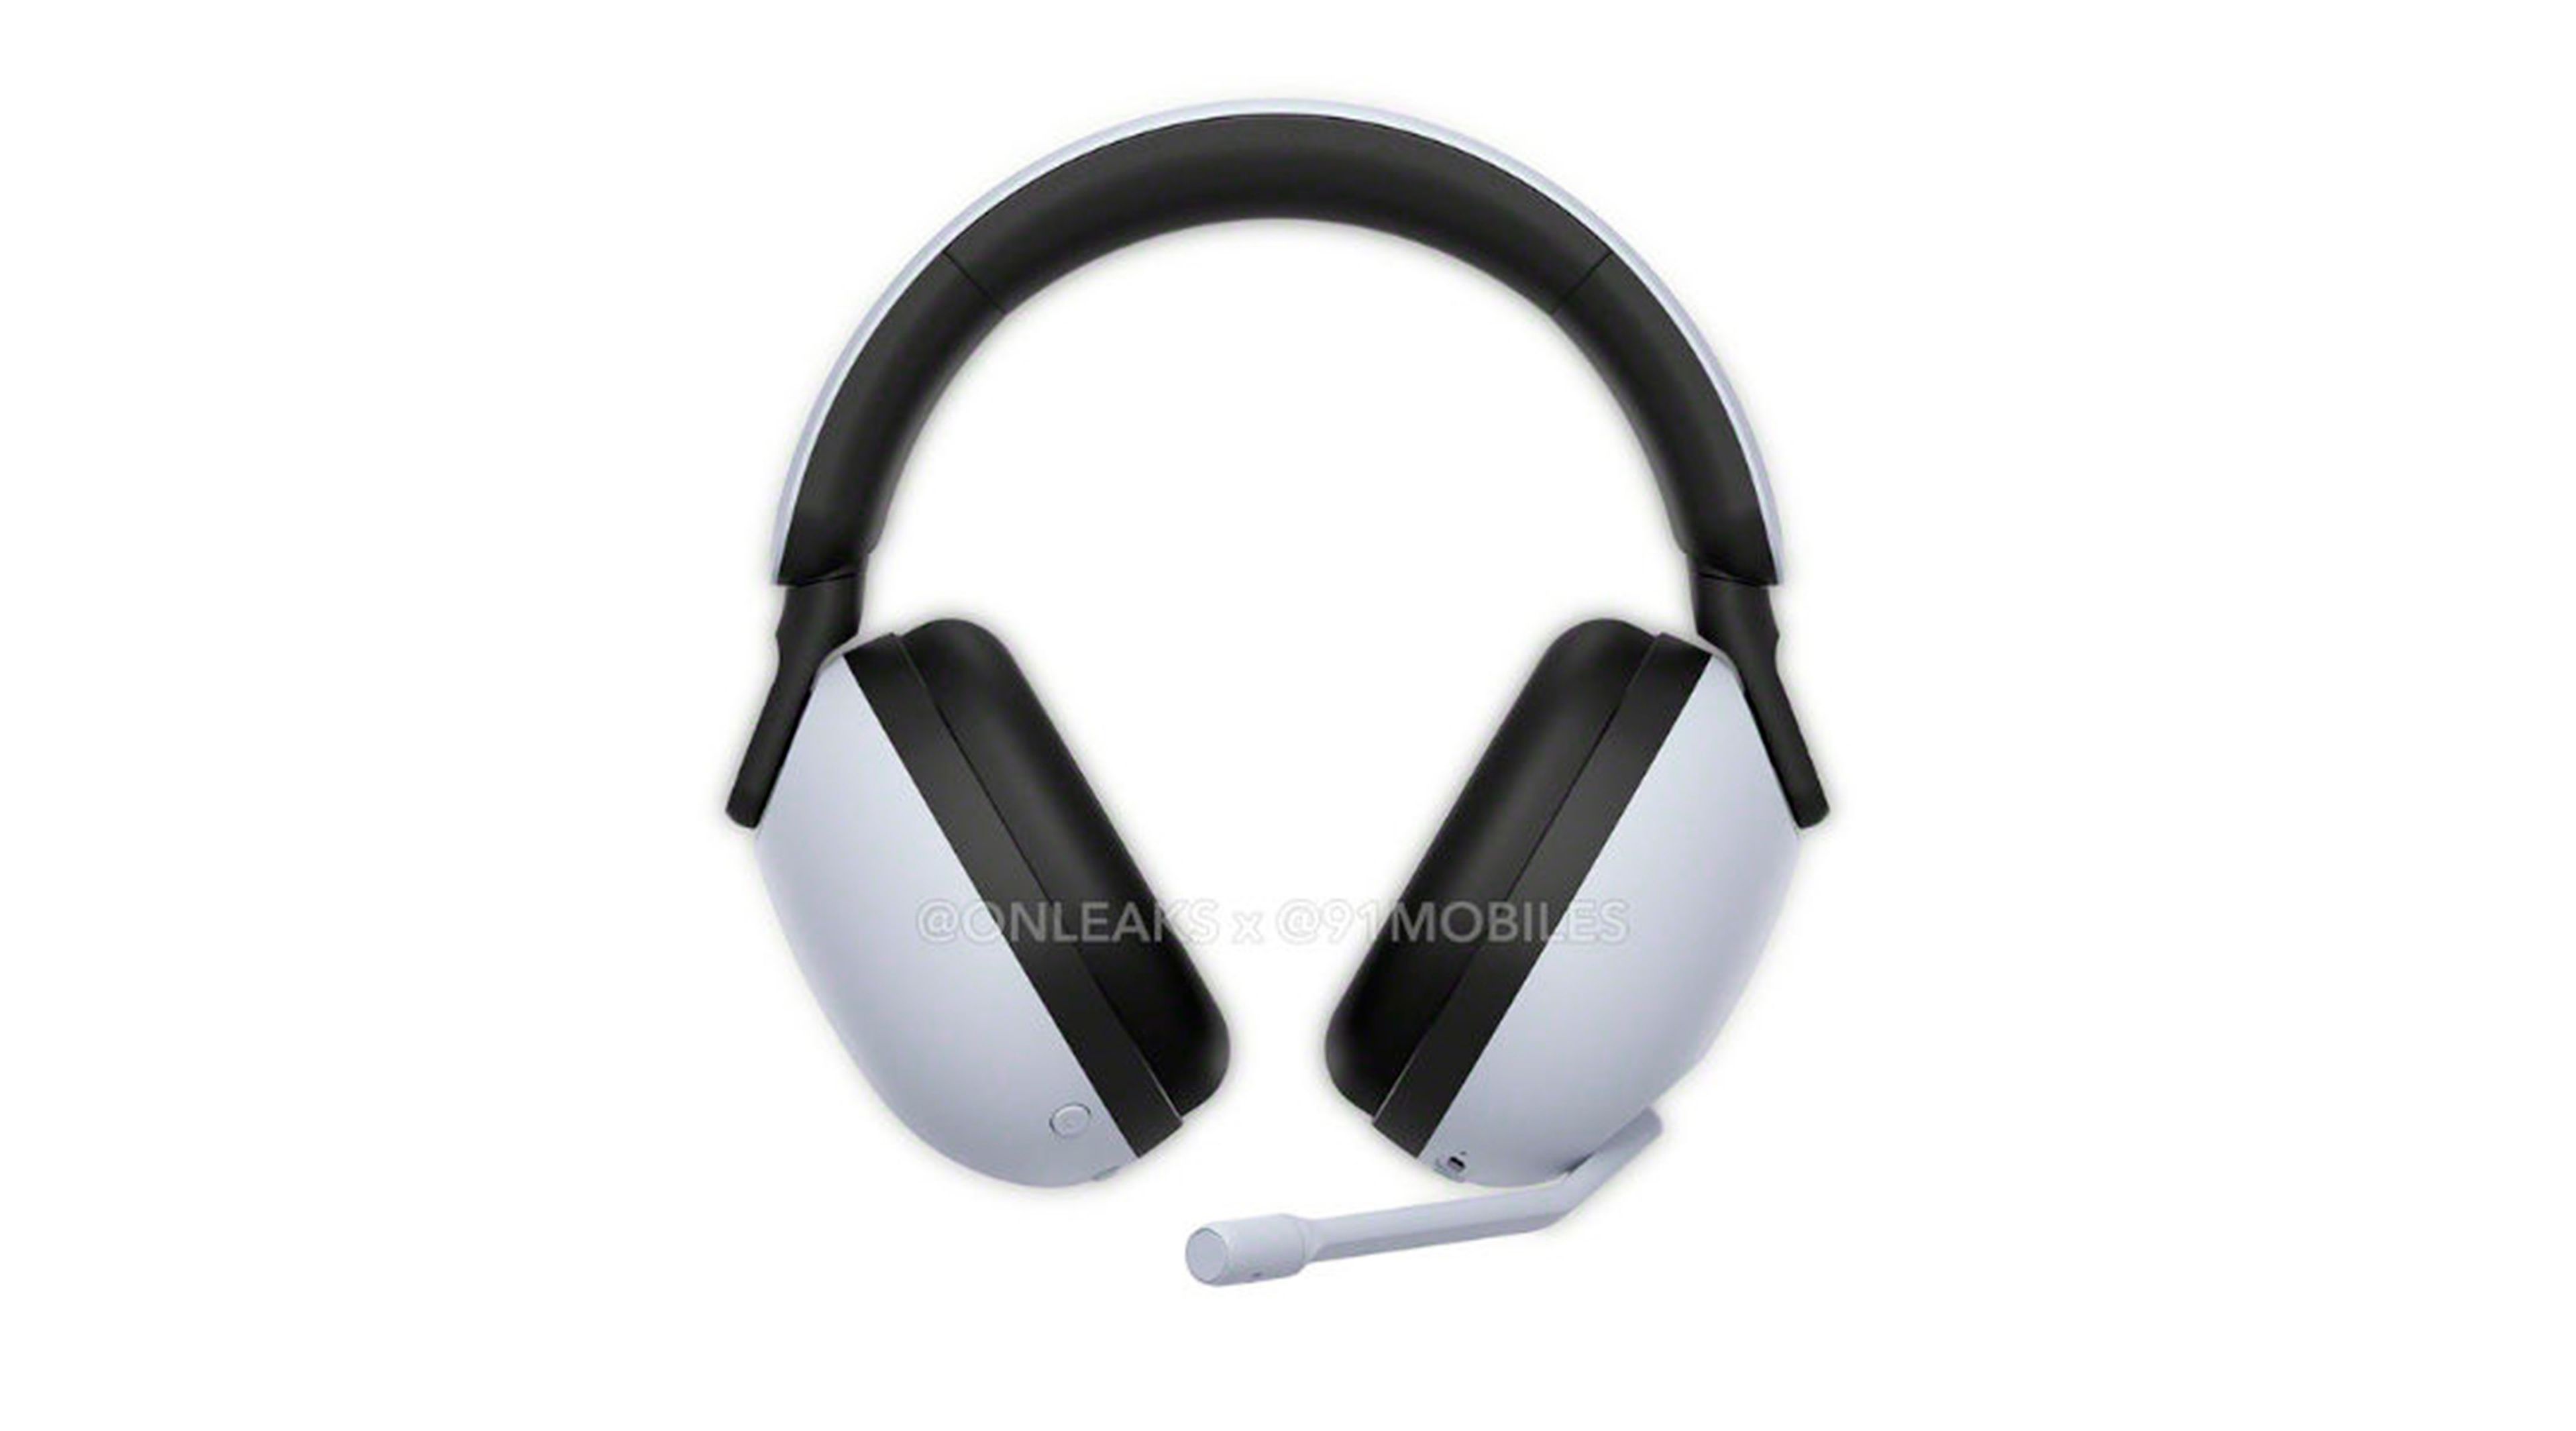 Nuevos auriculares inalámbricos para PS5 estarían en desarrollo por Sony,  según un insider